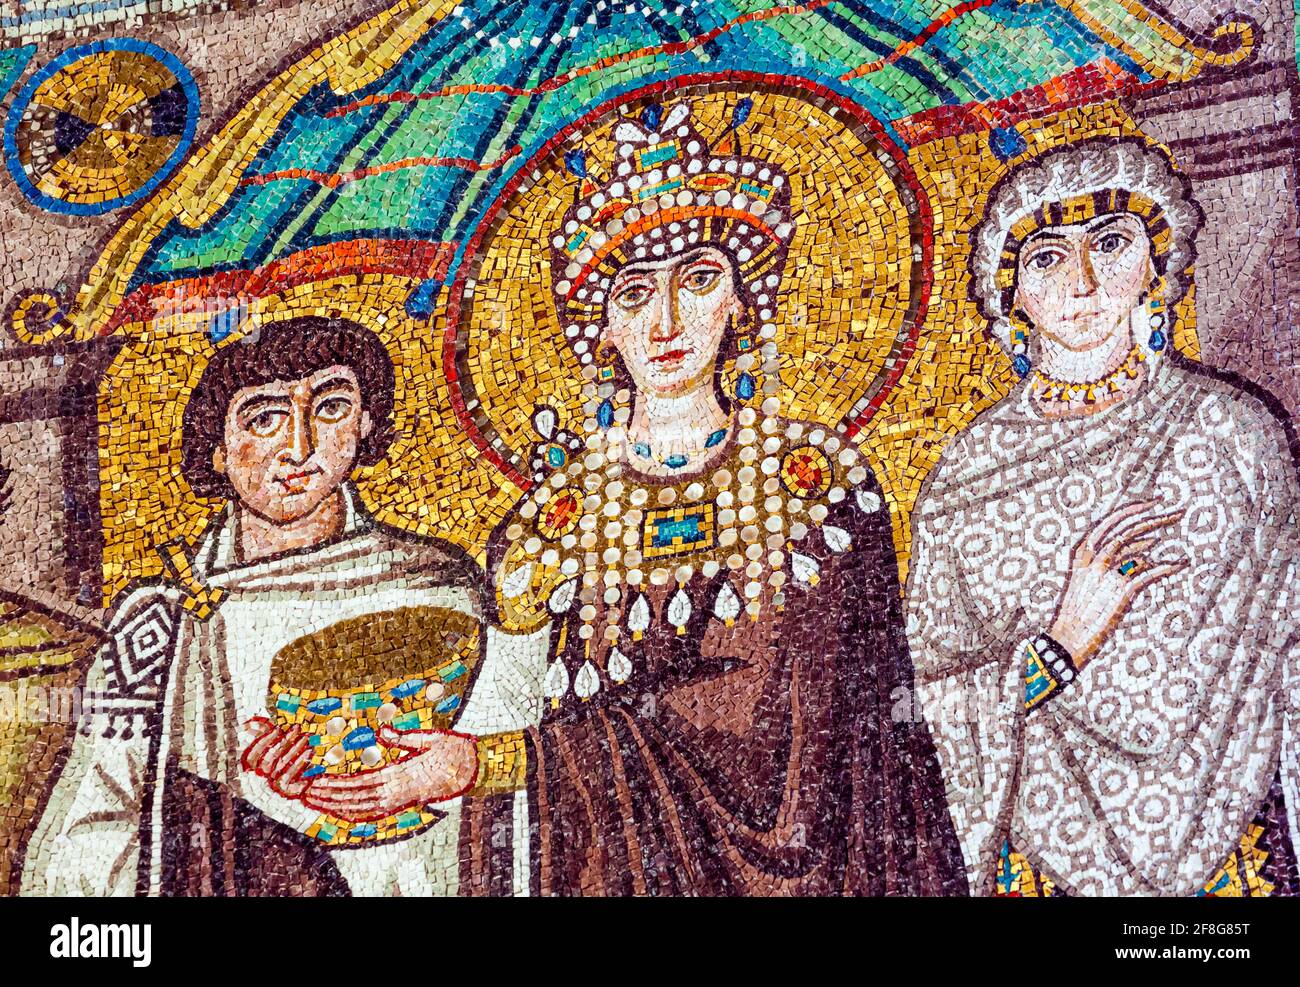 Ravenna, Provinz Ravenna, Italien. Detail eines Mosaiks aus dem 6. Jahrhundert in der Basilika San Vitale, das Kaiserin Theodora mit ihrem Hof zeigt. Sie hält den CO Stockfoto